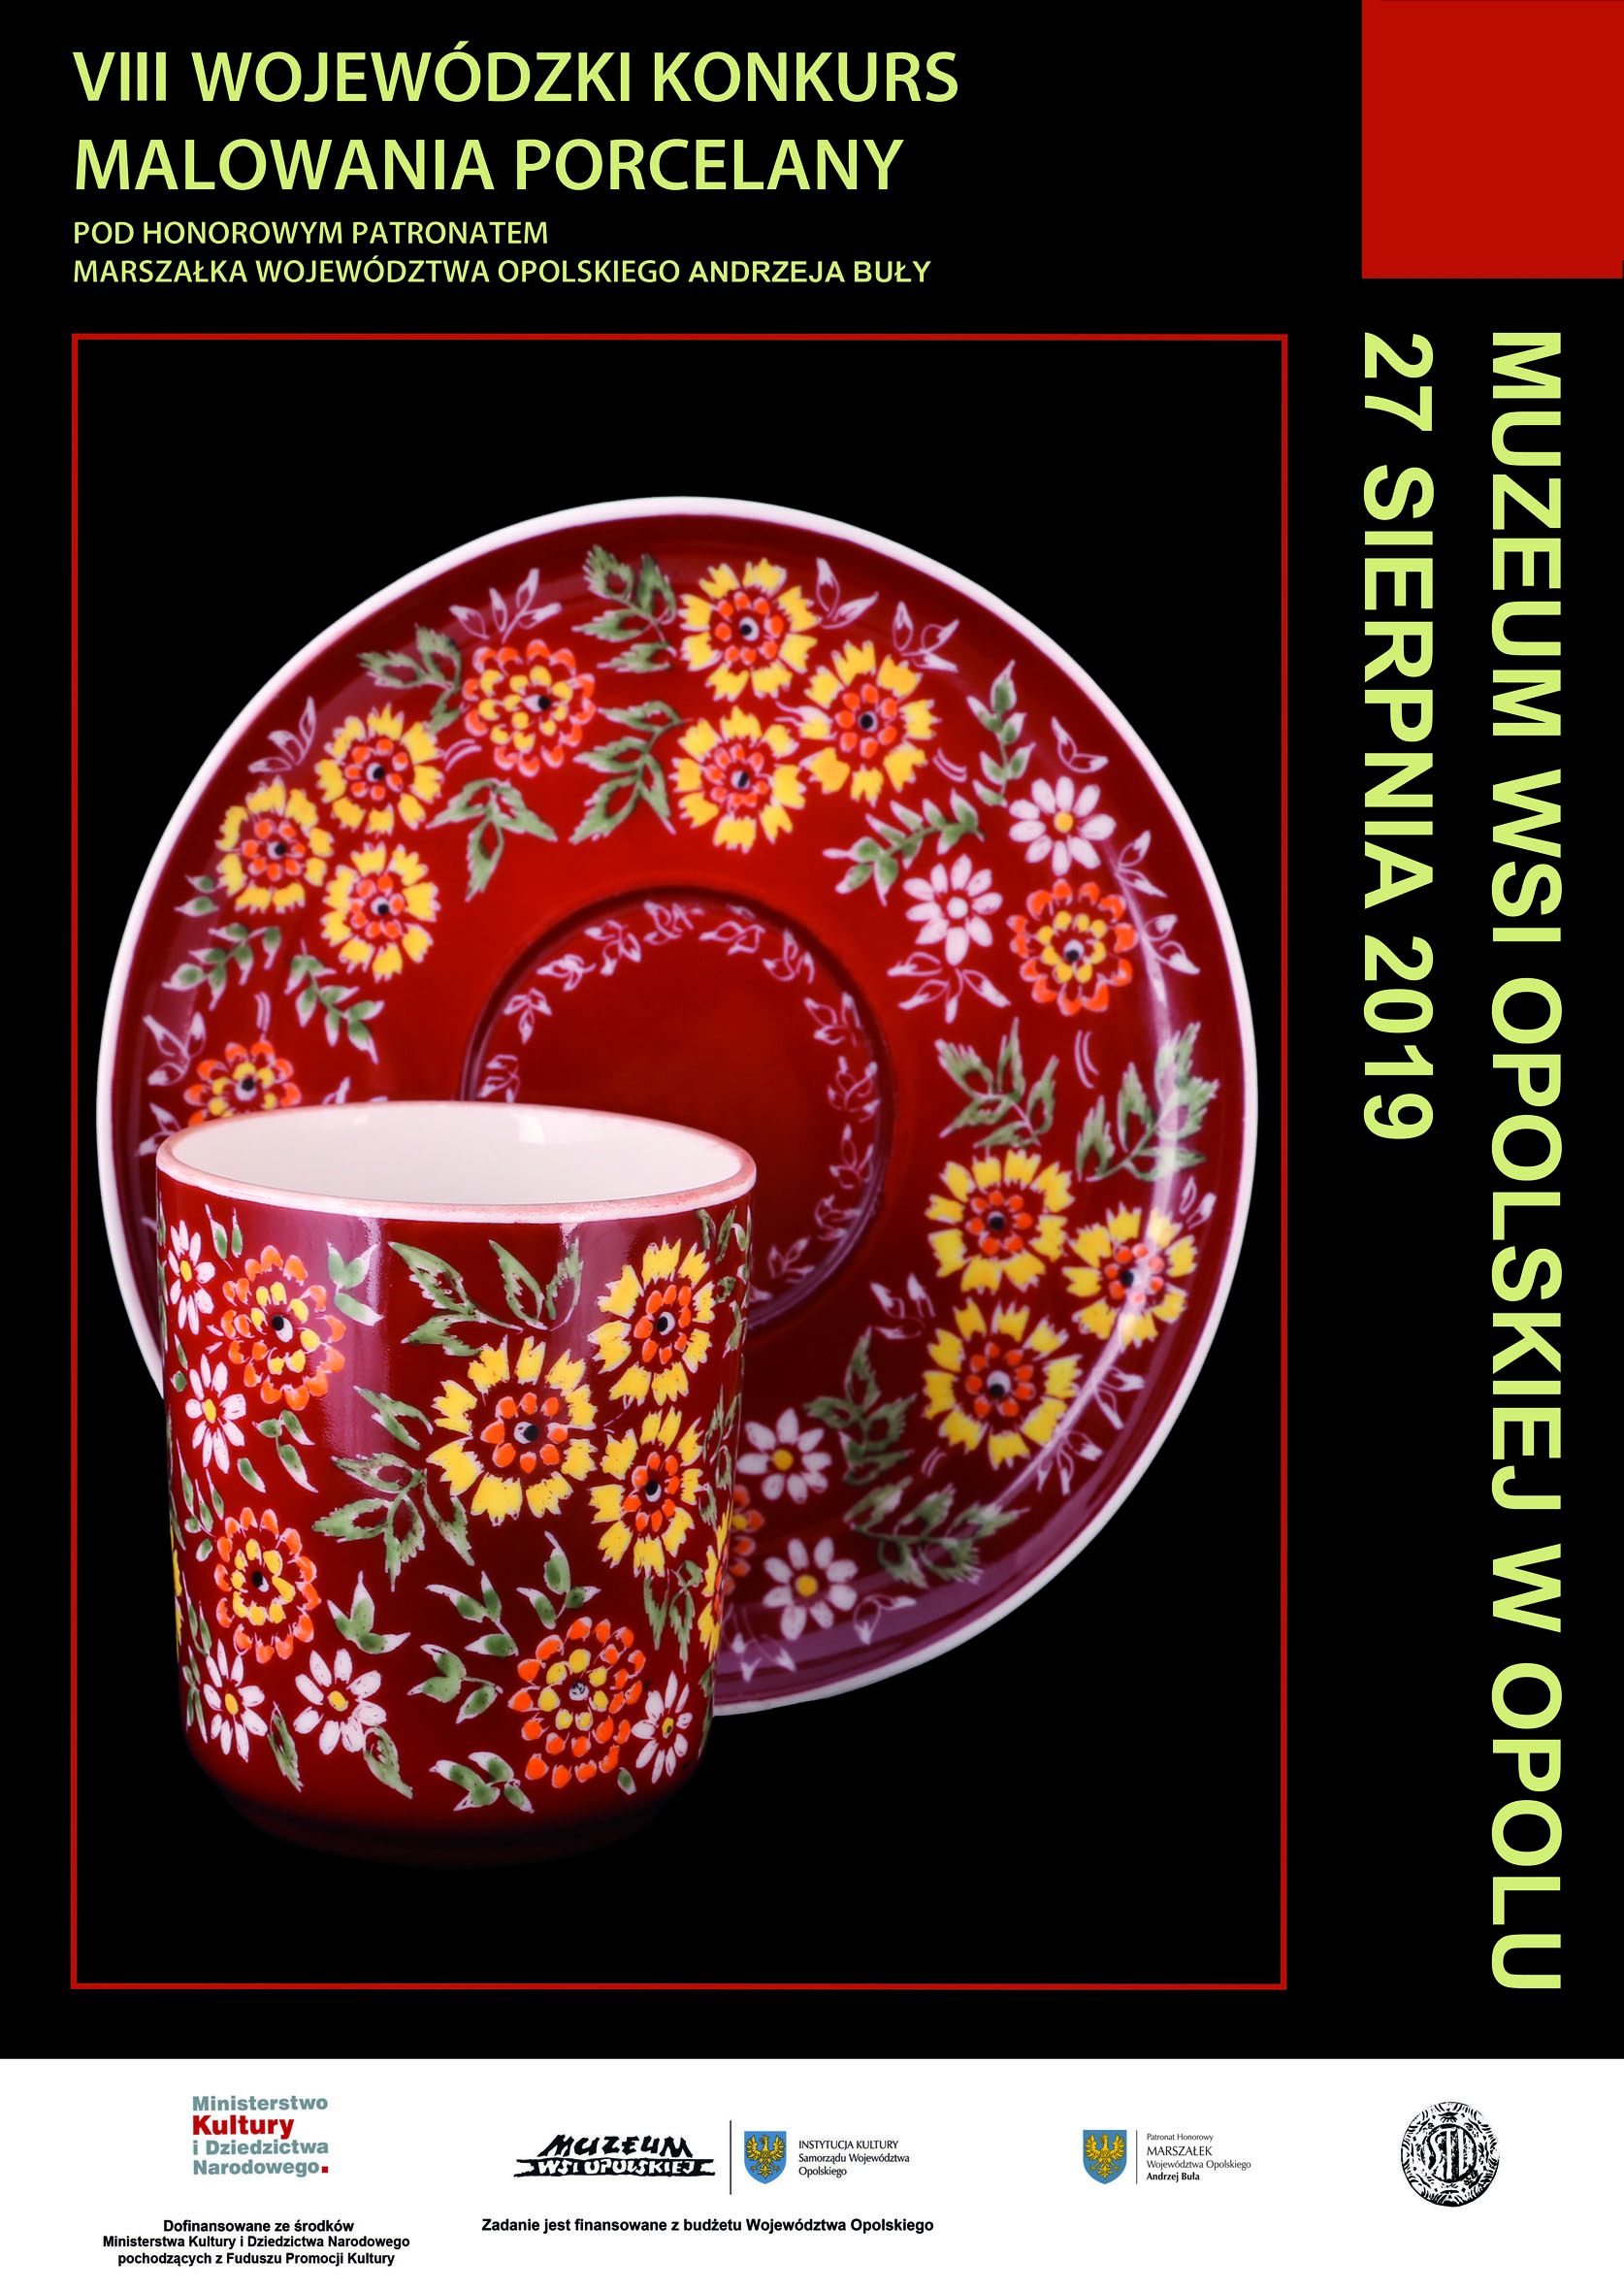 [GRAFIKA: Opolska porcelana (kubek i spodeczek w kolorze czerwonym) w kolorowe motywy kwiatowe, na czarnym tle.]